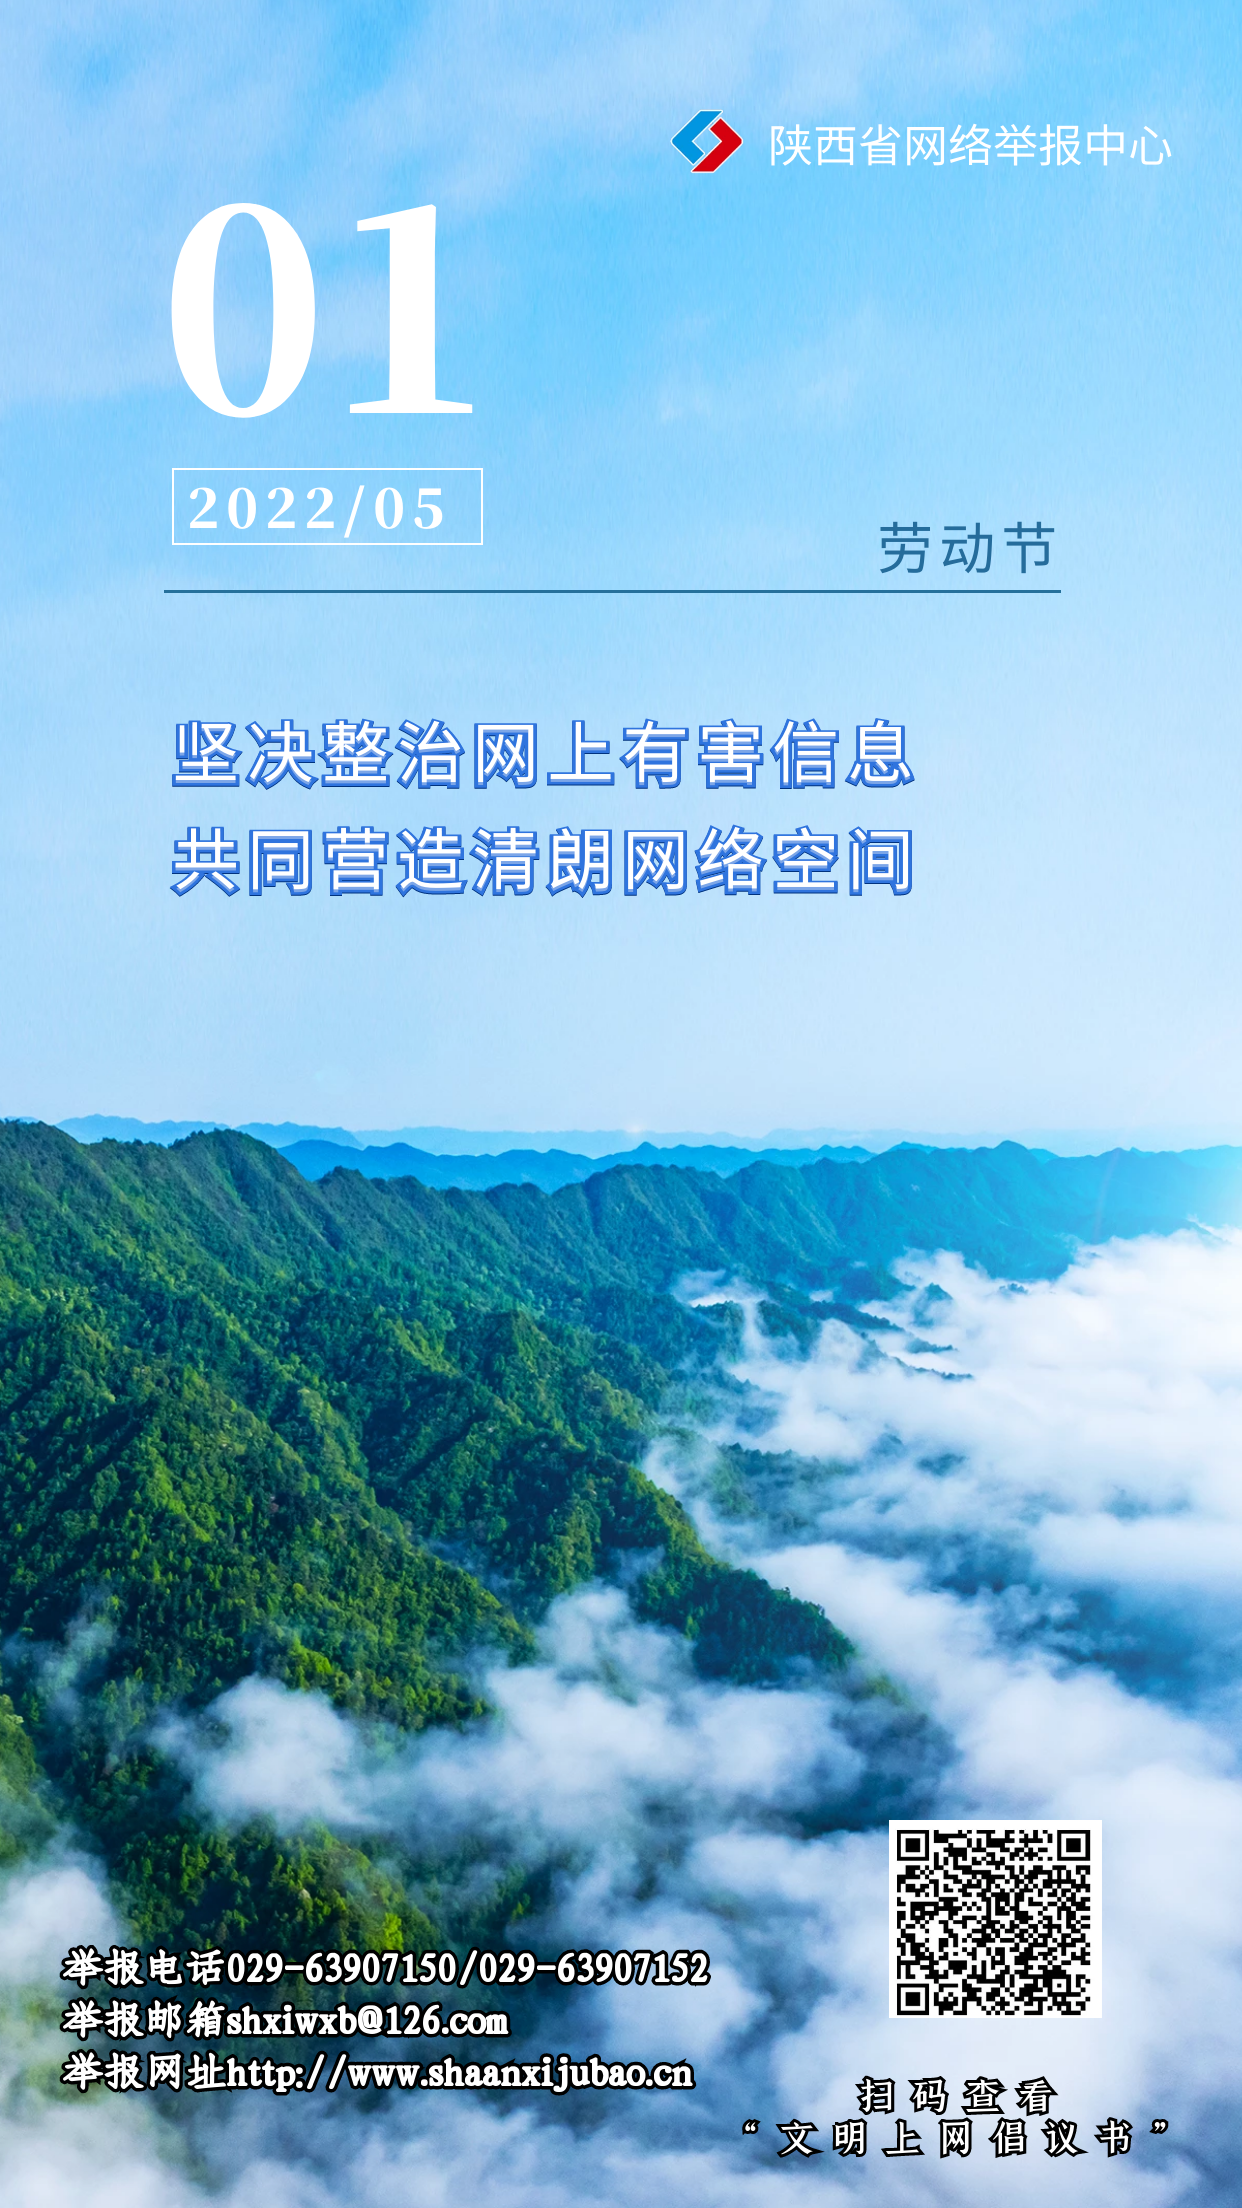 陕西省网络举报中心发布2022年“五一劳动节”文明上网倡议书